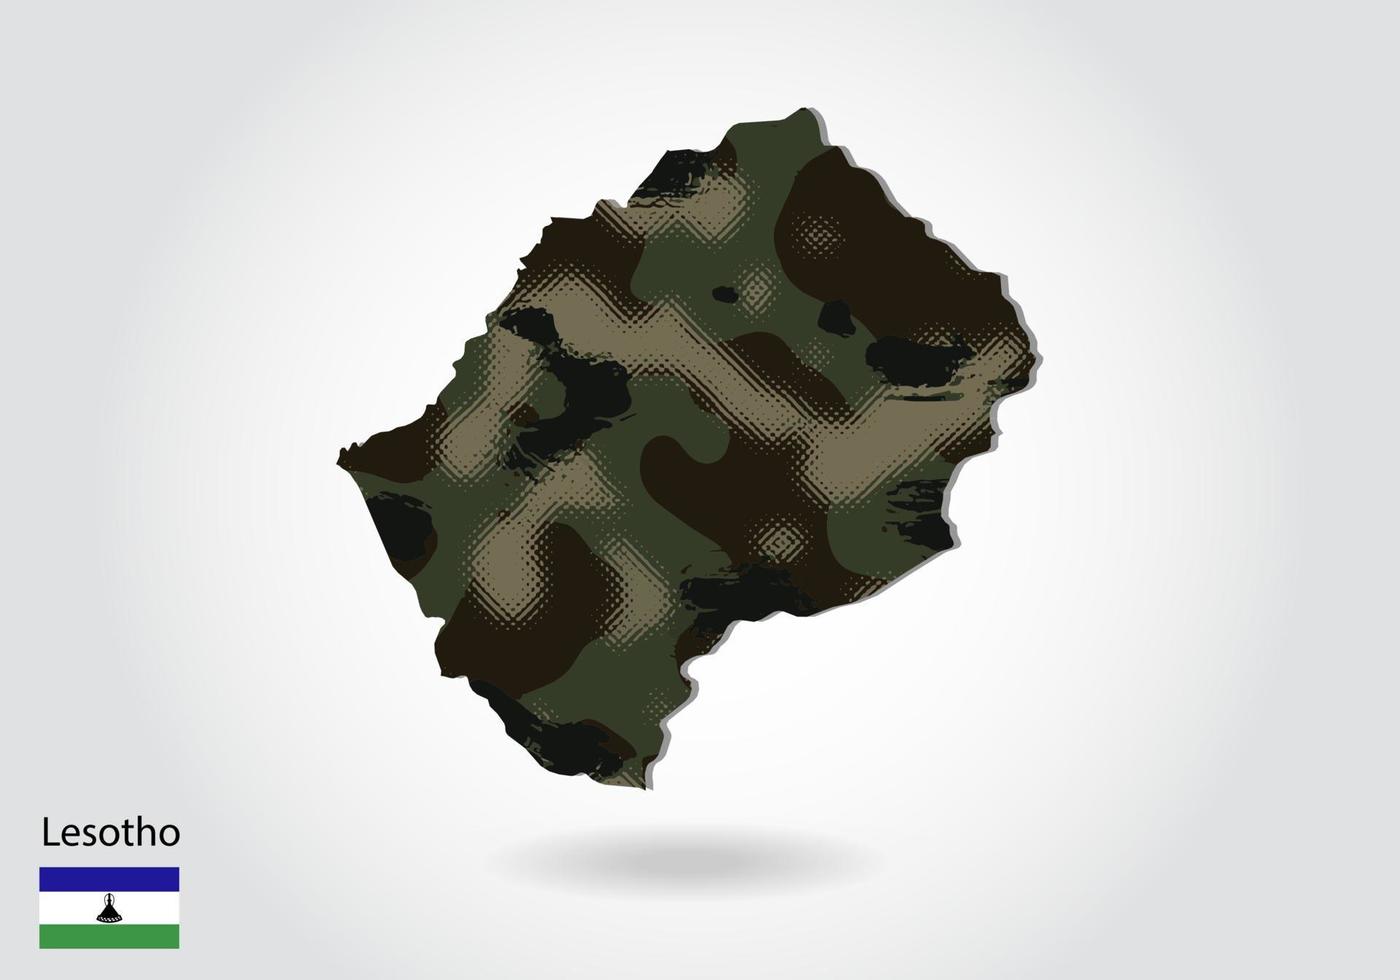 mapa de lesotho con patrón de camuflaje, bosque - textura verde en el mapa. concepto militar para ejército, soldado y guerra. escudo de armas, bandera. vector